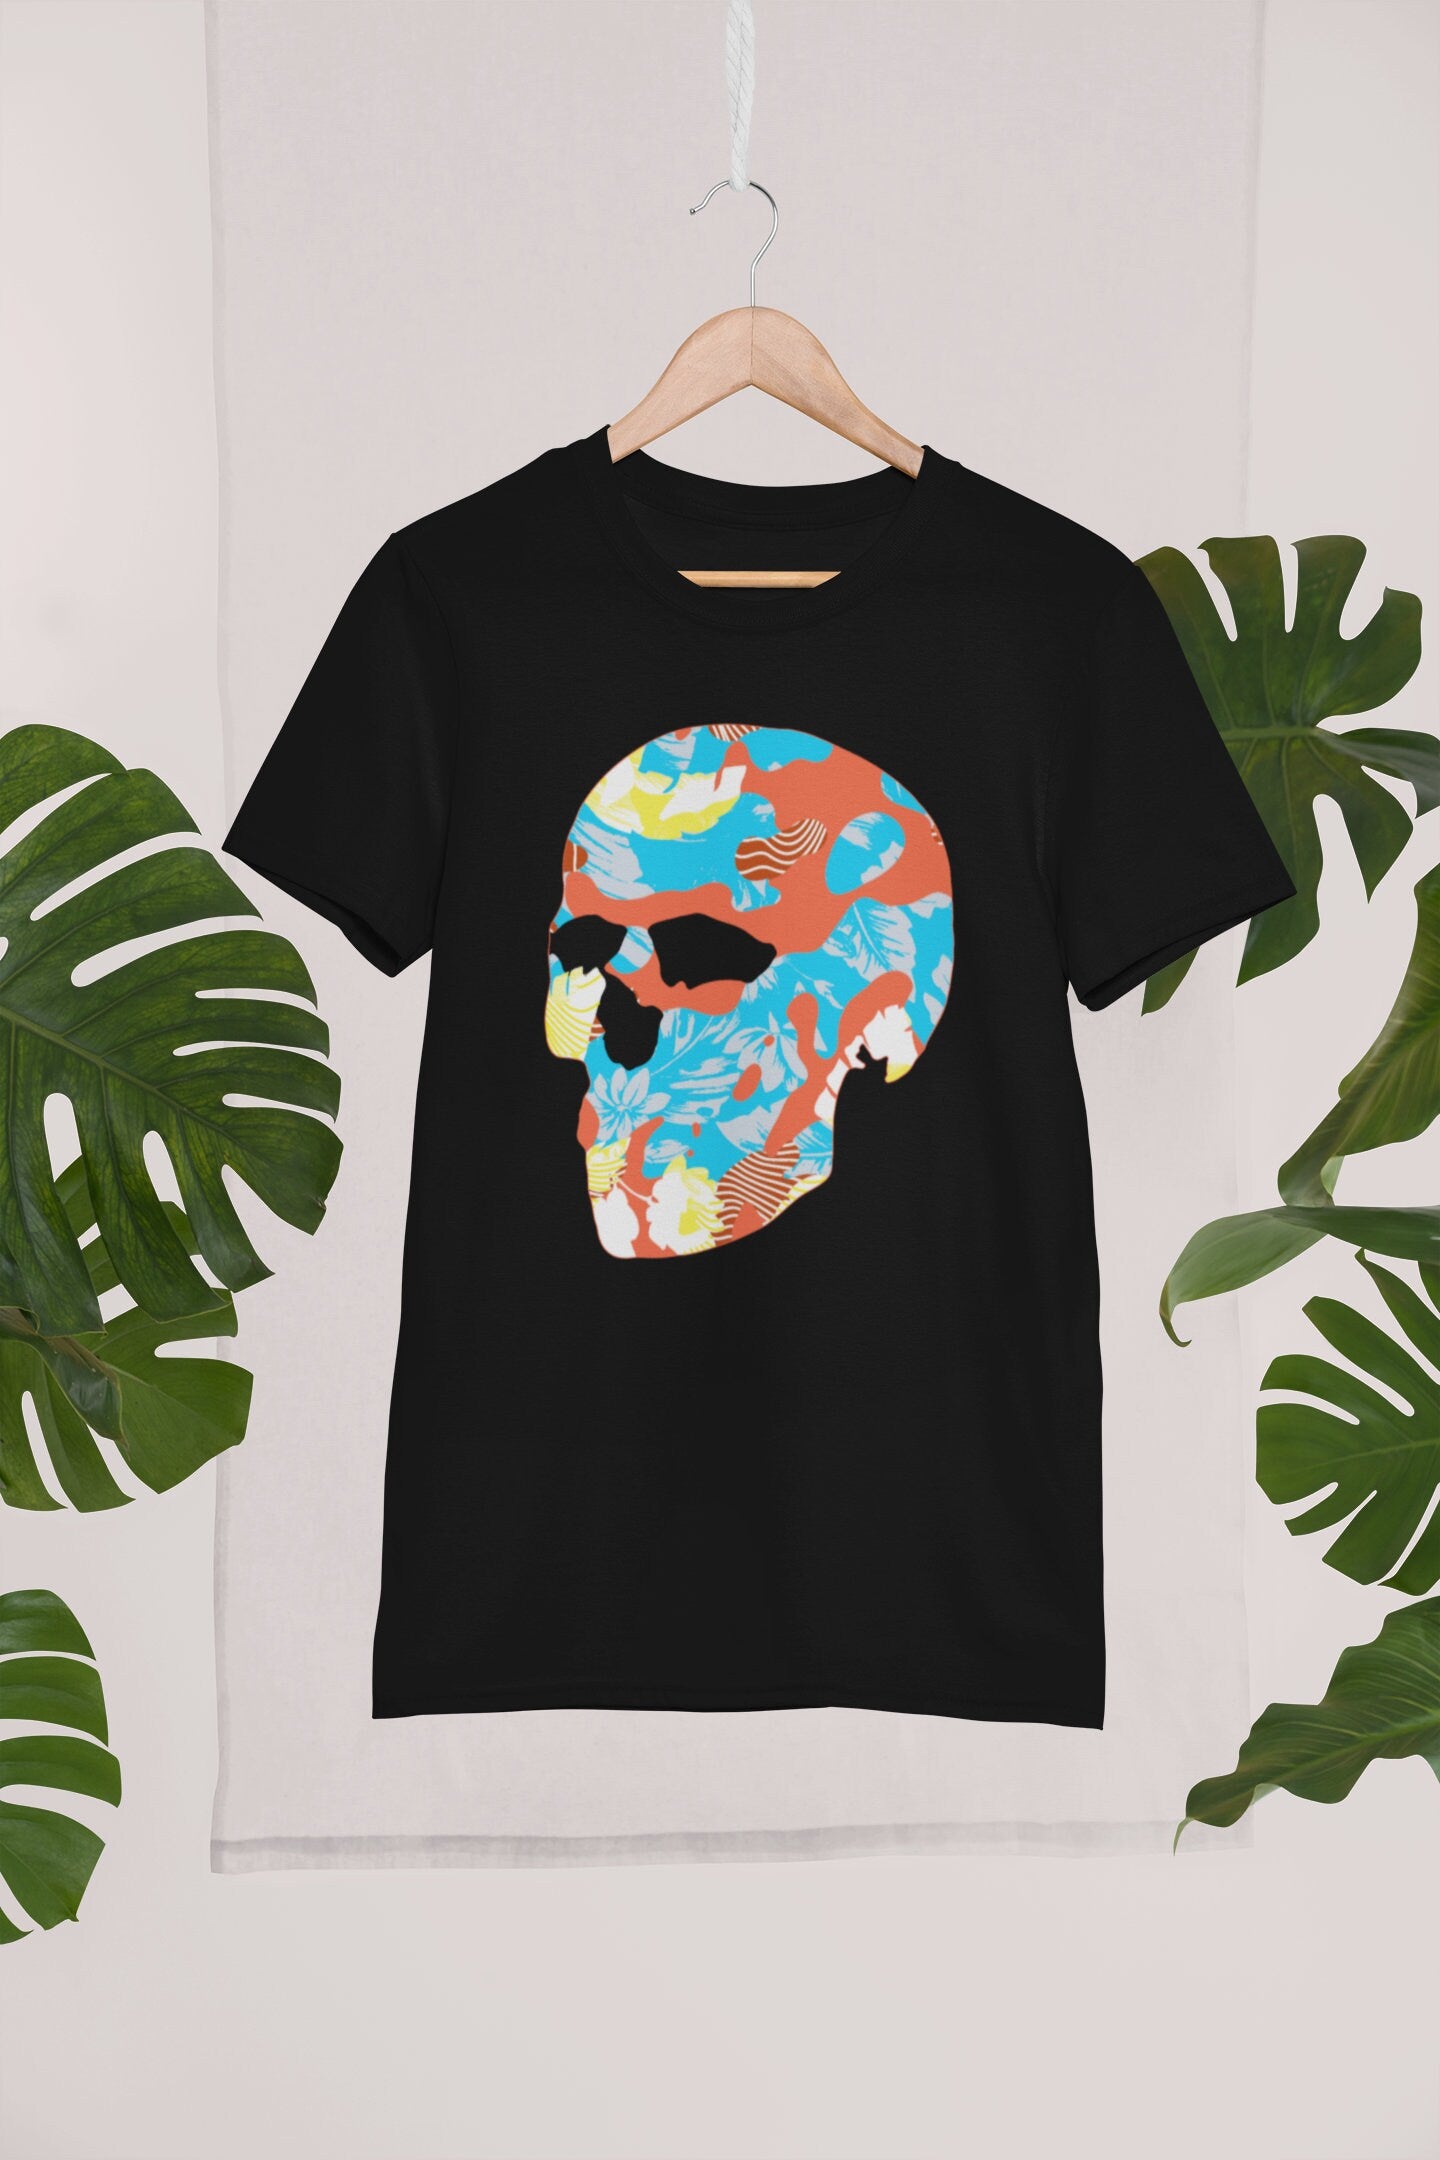 Sugar Skull Men's T-shirt, Skull Print Mens Tshirt, Abstract Sugar Skull Art Shirt, Skull Graphic Tee Gift For Him, Gothic Skull Shirt Gift